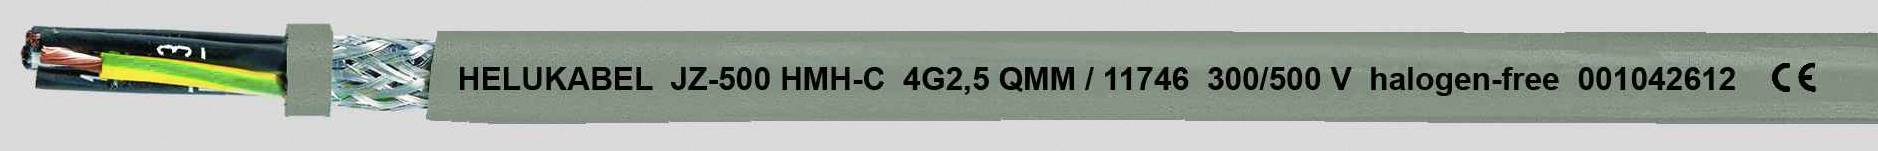 HELUKABEL JZ-500 HMH-C Steuerleitung 3 G 0.50 mm² Grau 11657-1000 1000 m